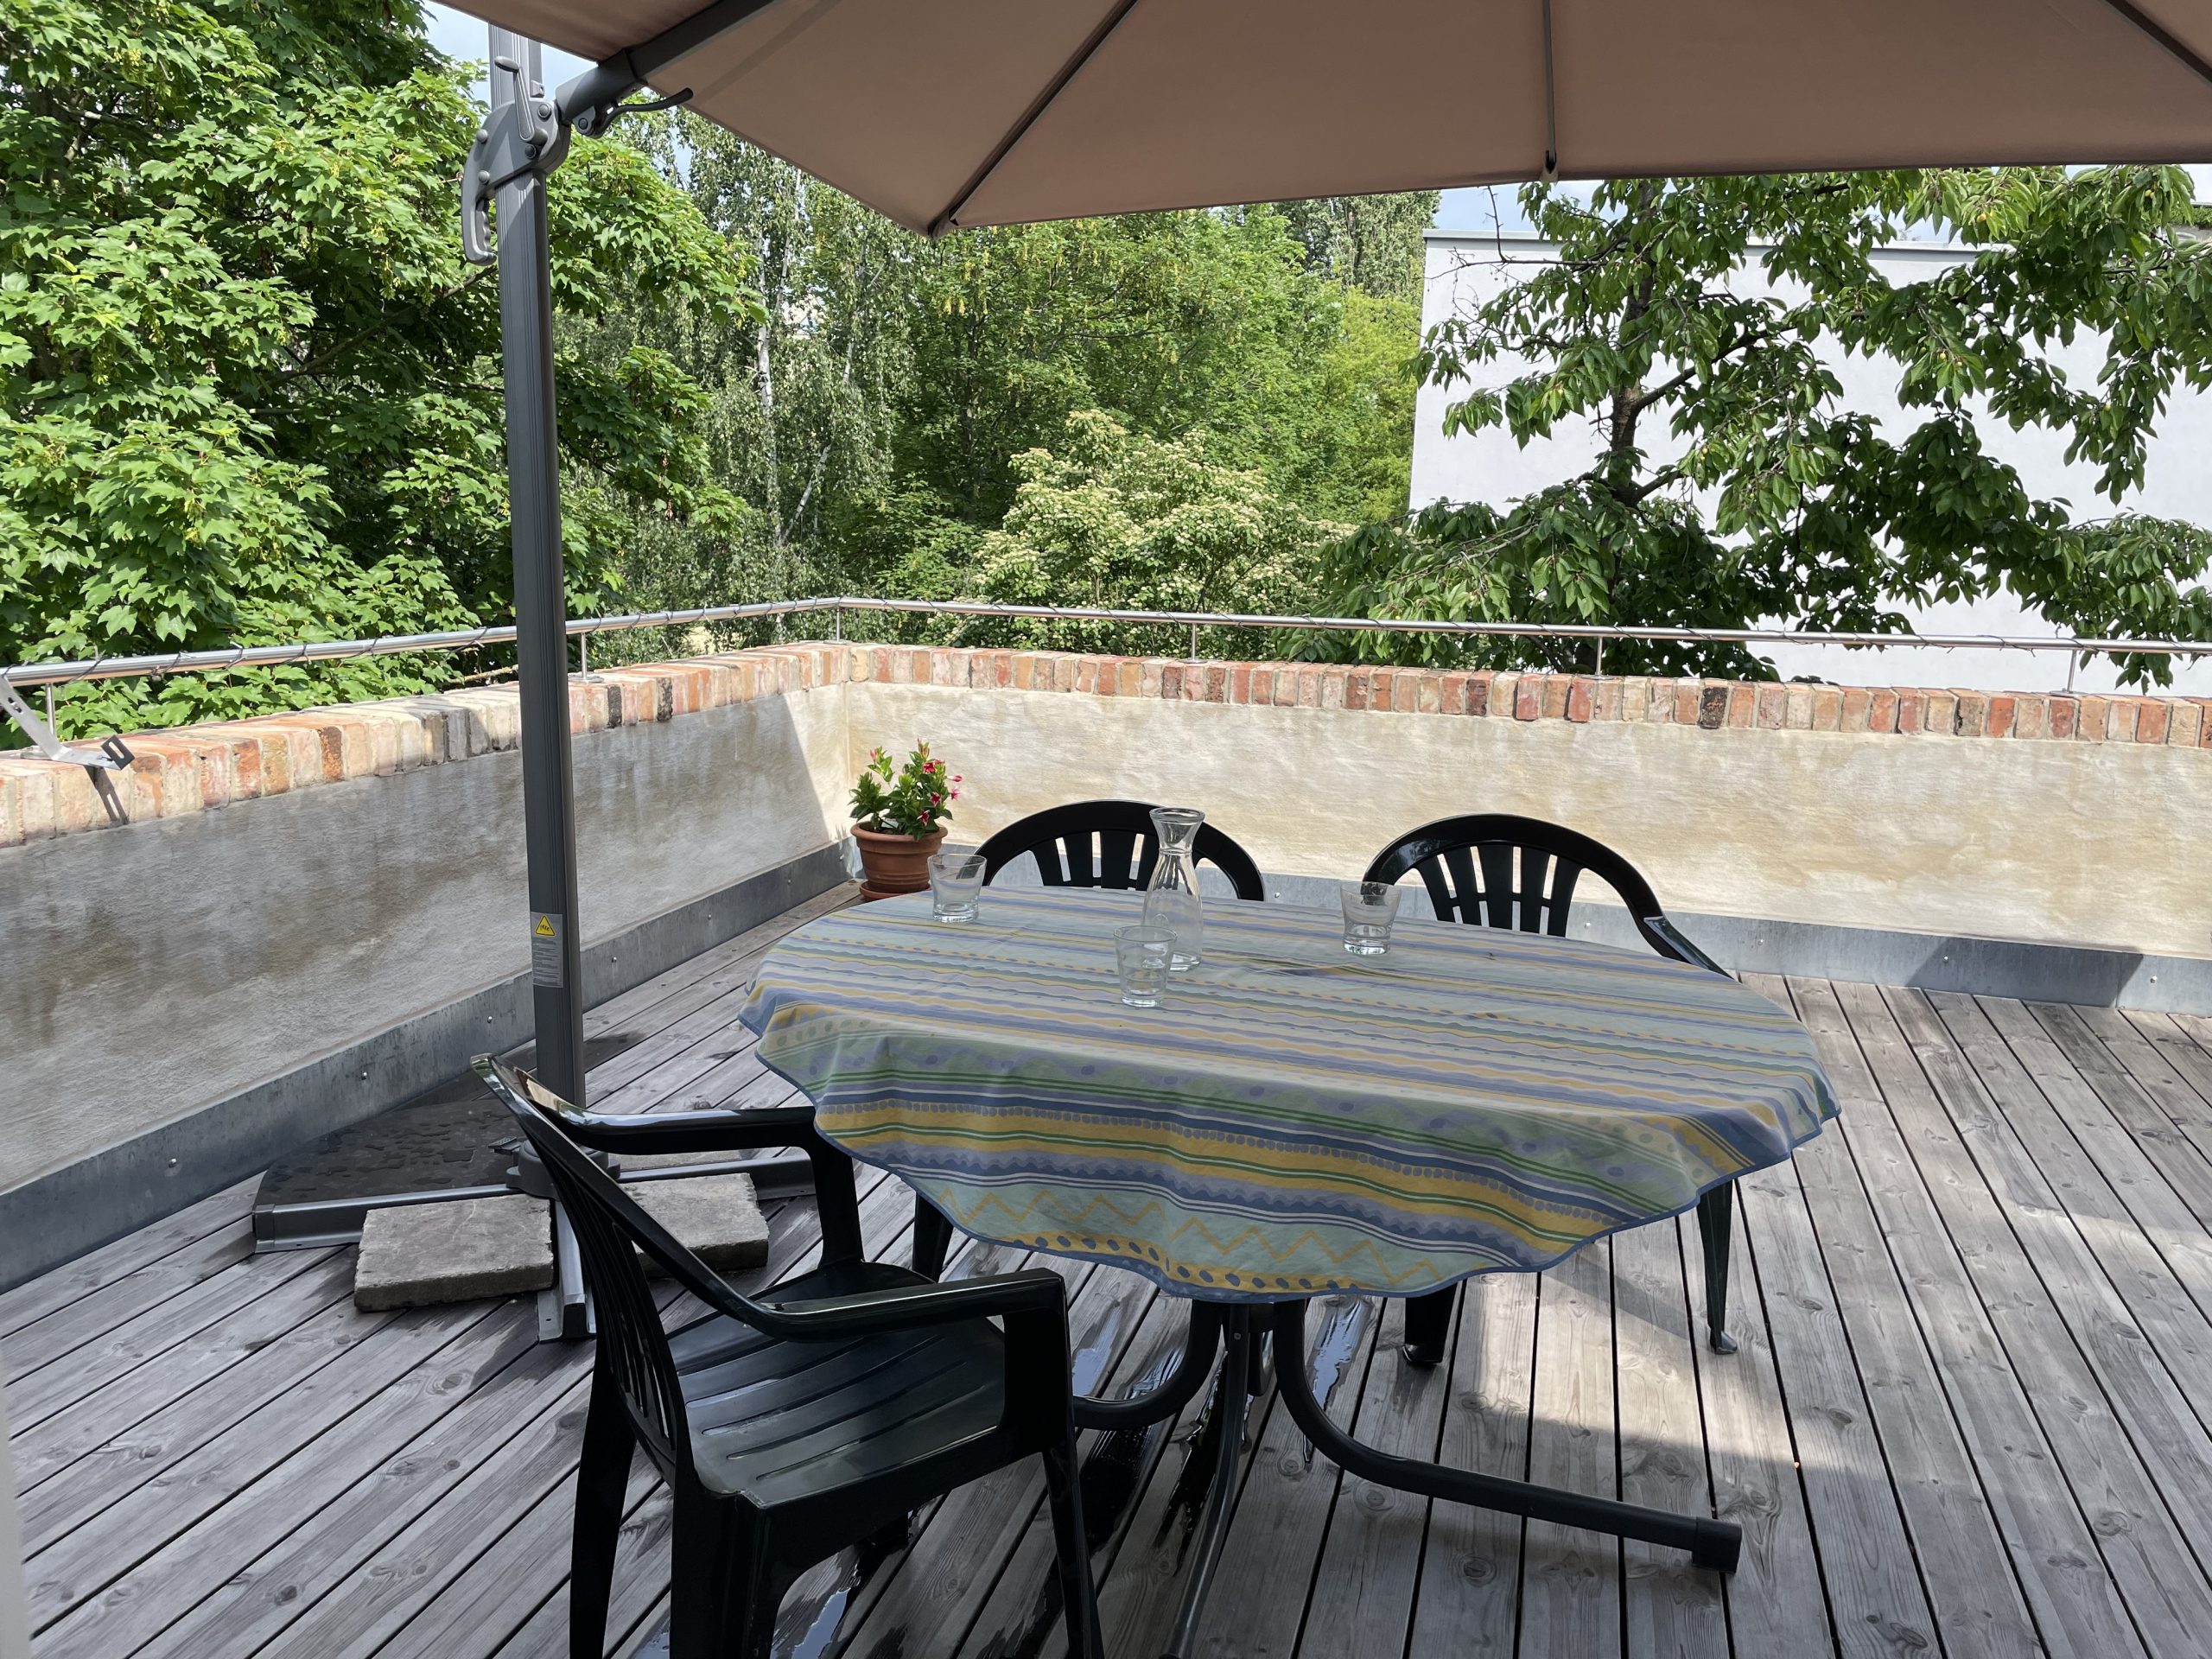 Fotografie der Terrasse des Hinterhauses Glauchaviertel mit Holzboden, auf dem ein Esstisch, drei Stühle und ein Sonnenschirm stehen, hinter der Terrasse befinden sich Bäume.